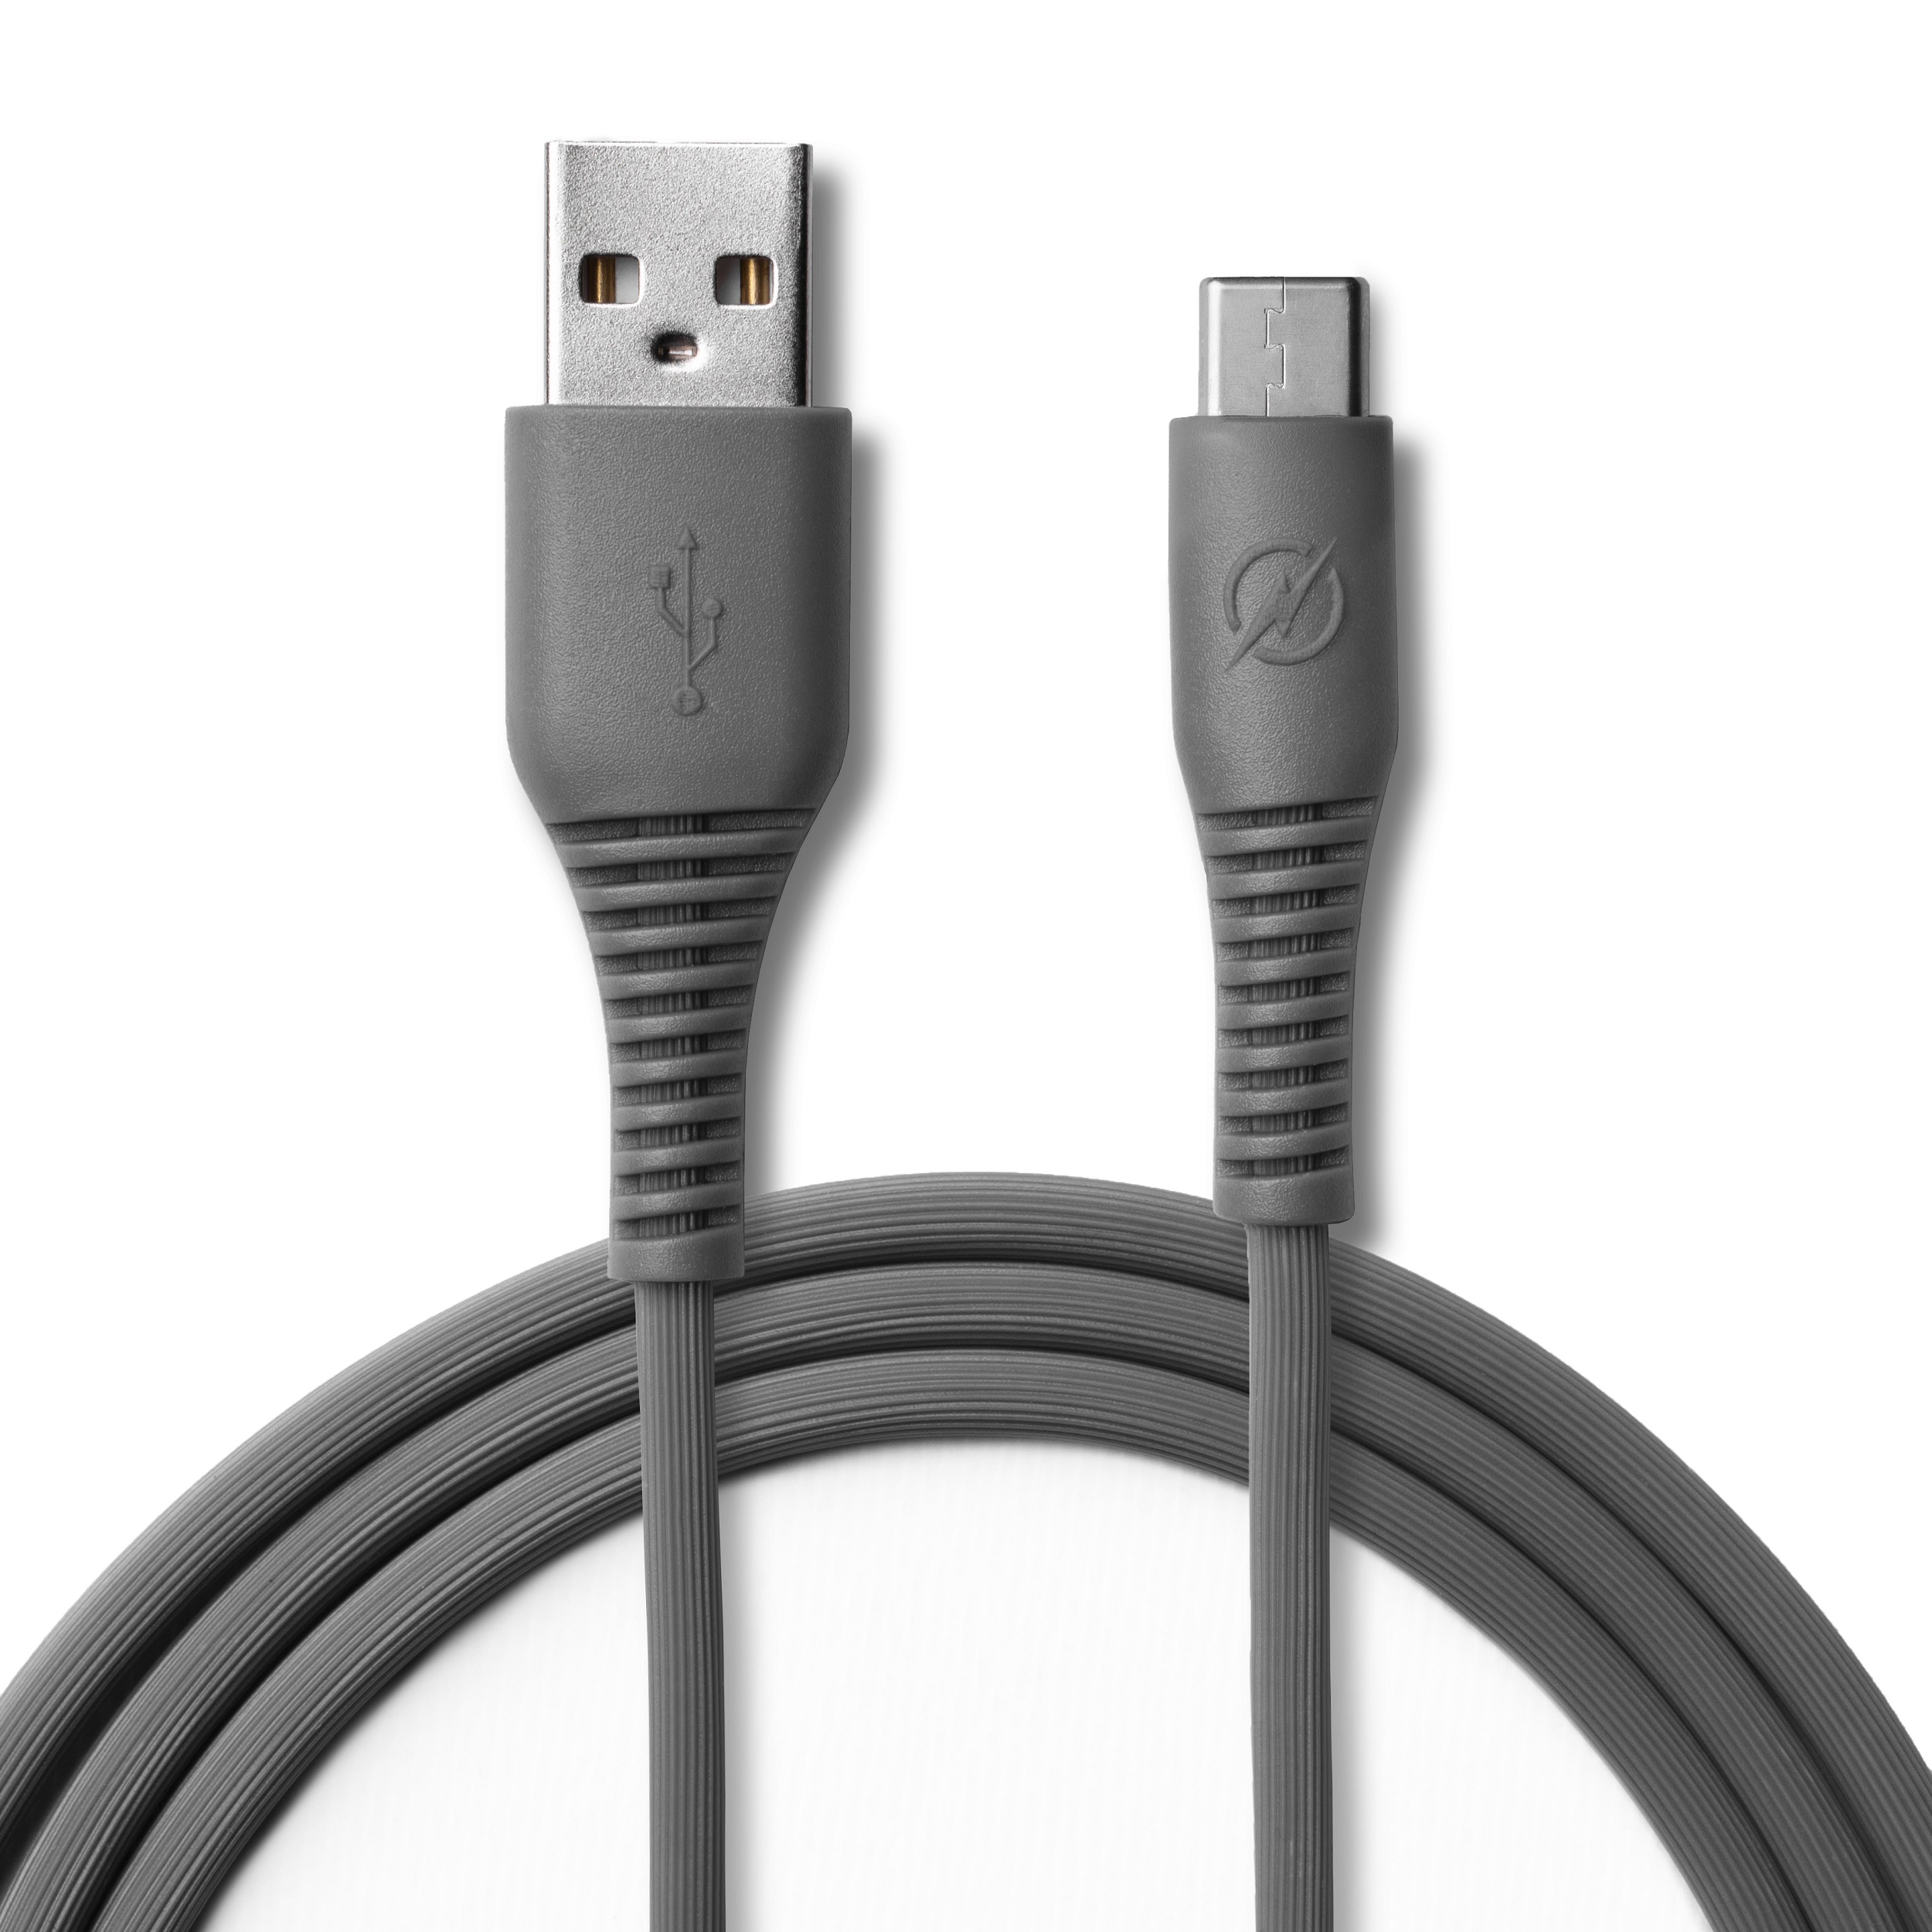 ارزان ترین قیمت کابل تبدیل USB به usb-c ایتی لینک مدل F1 طول 1 متر بسته 24عددی